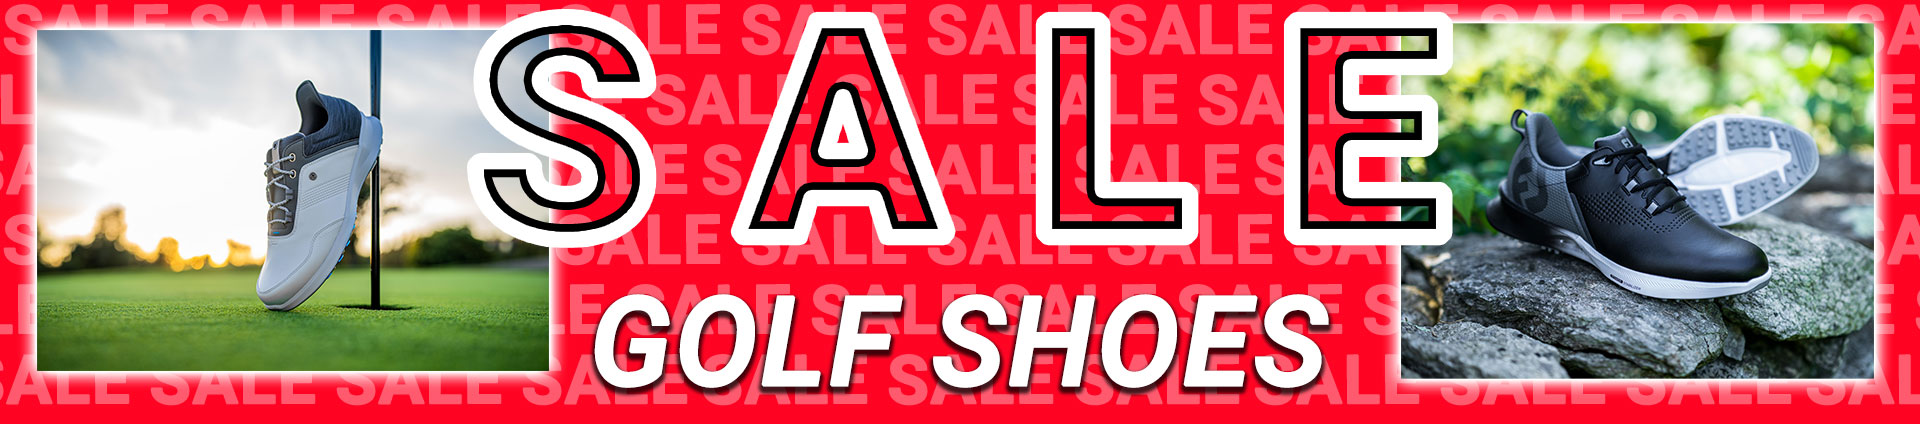 Sale Golf Shoes